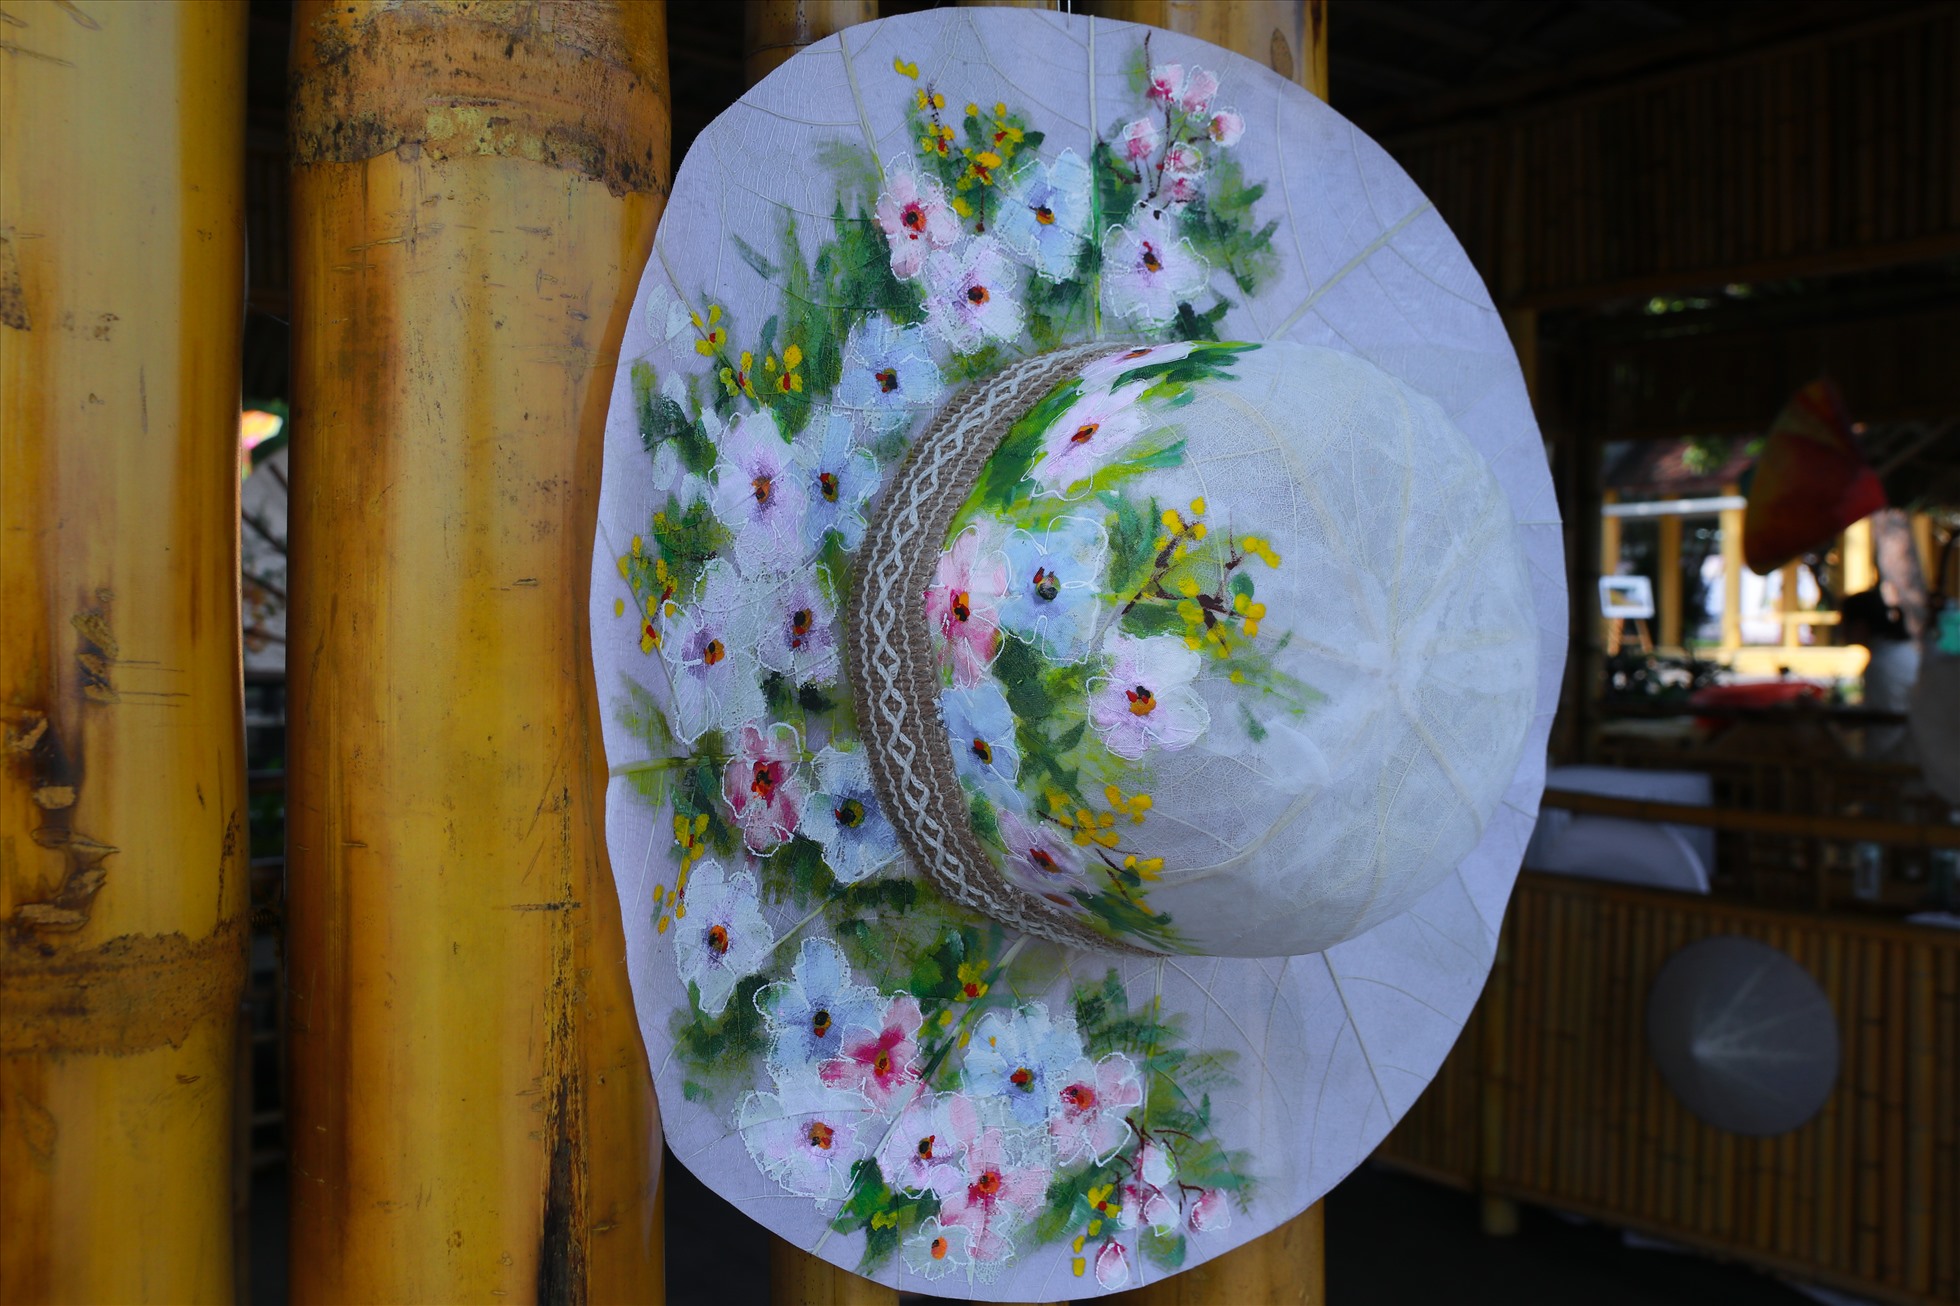 Tại các gian hàng trưng bày sản phẩm nghề truyền thống, kiệt tác “Nón lá bàng” của nghệ nhân Võ Ngọc Hùng (Huế) đã được đặt hàng khi chưa diễn ra lễ khai mạc và hiện tại nón của ông đã gần hết, chỉ còn vài chiếc.